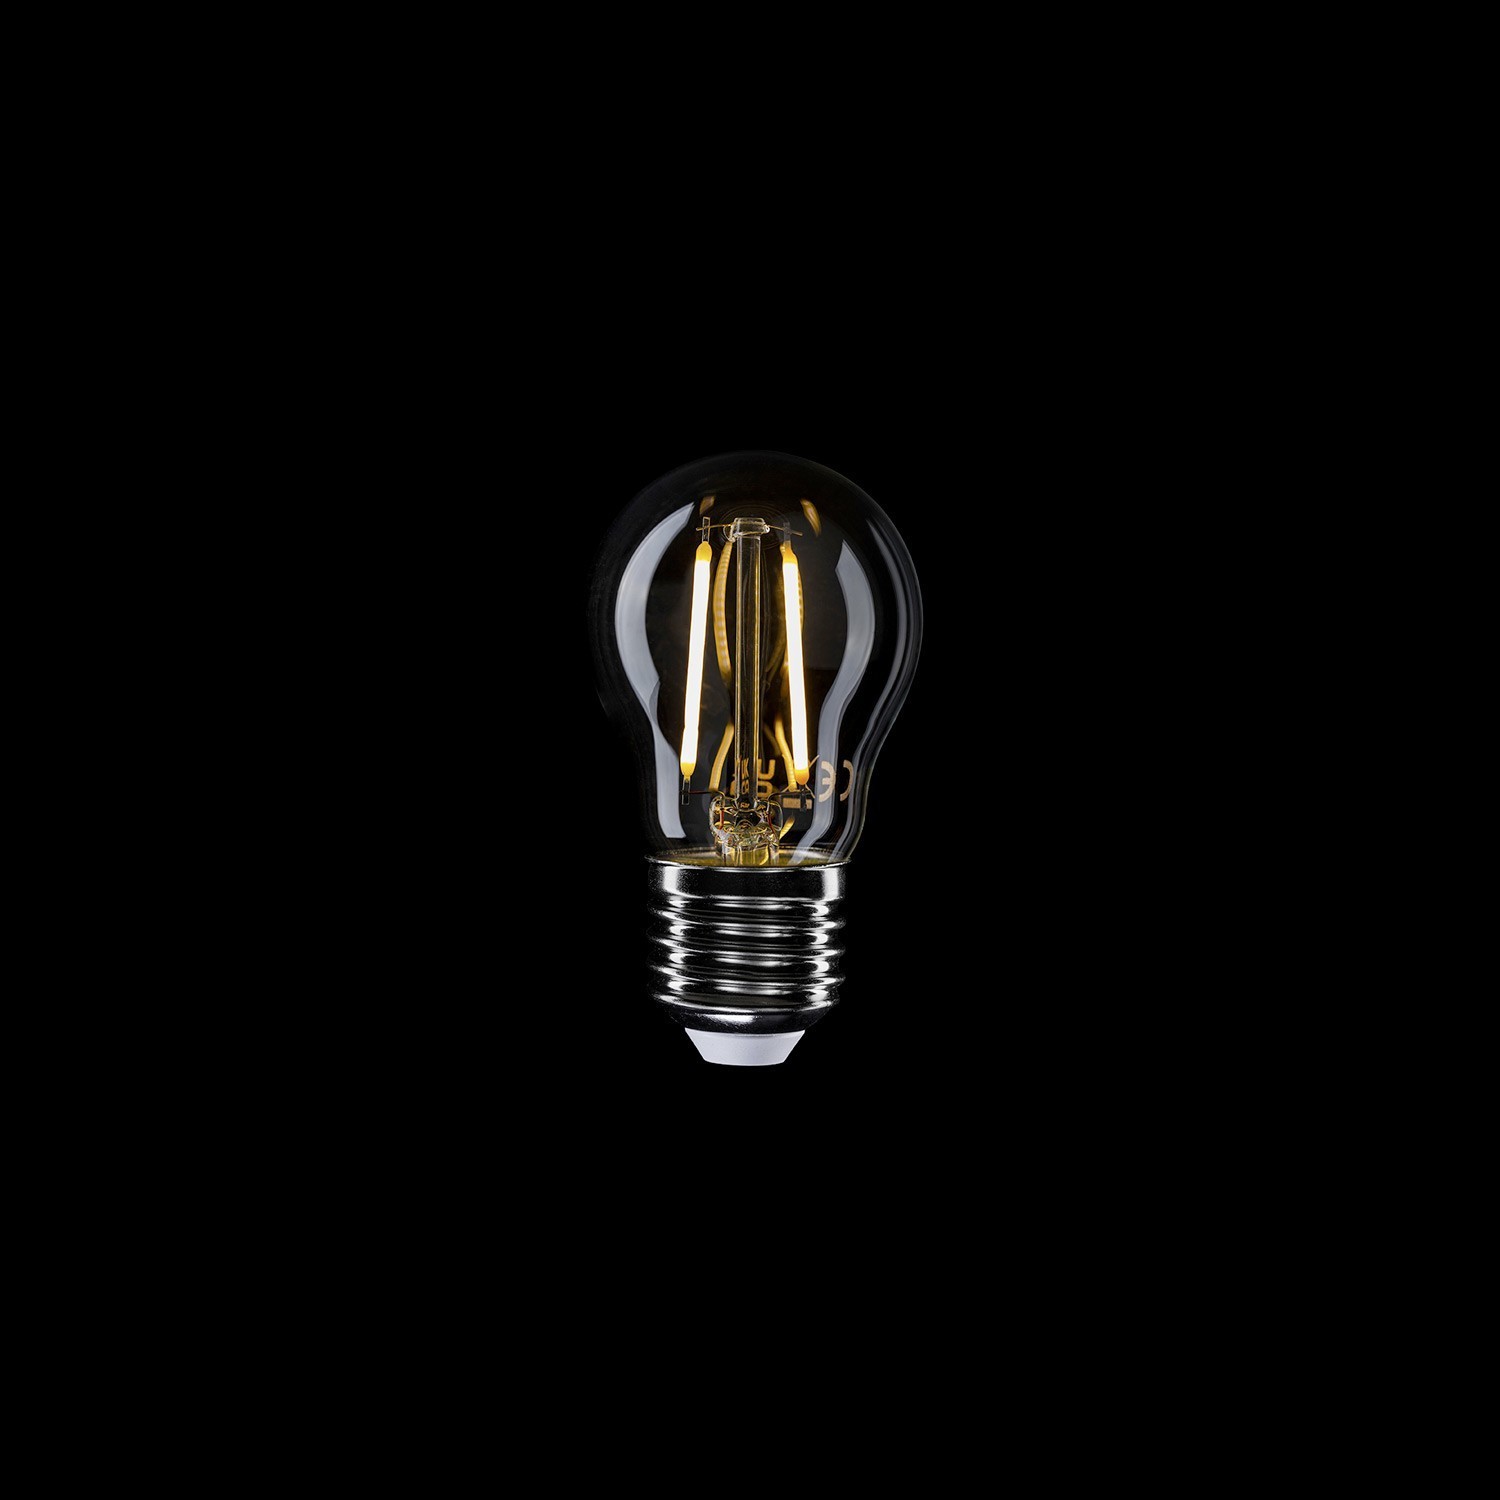 LED Transparent Light Bulb G45 2W 136Lm E27 2700K - E08